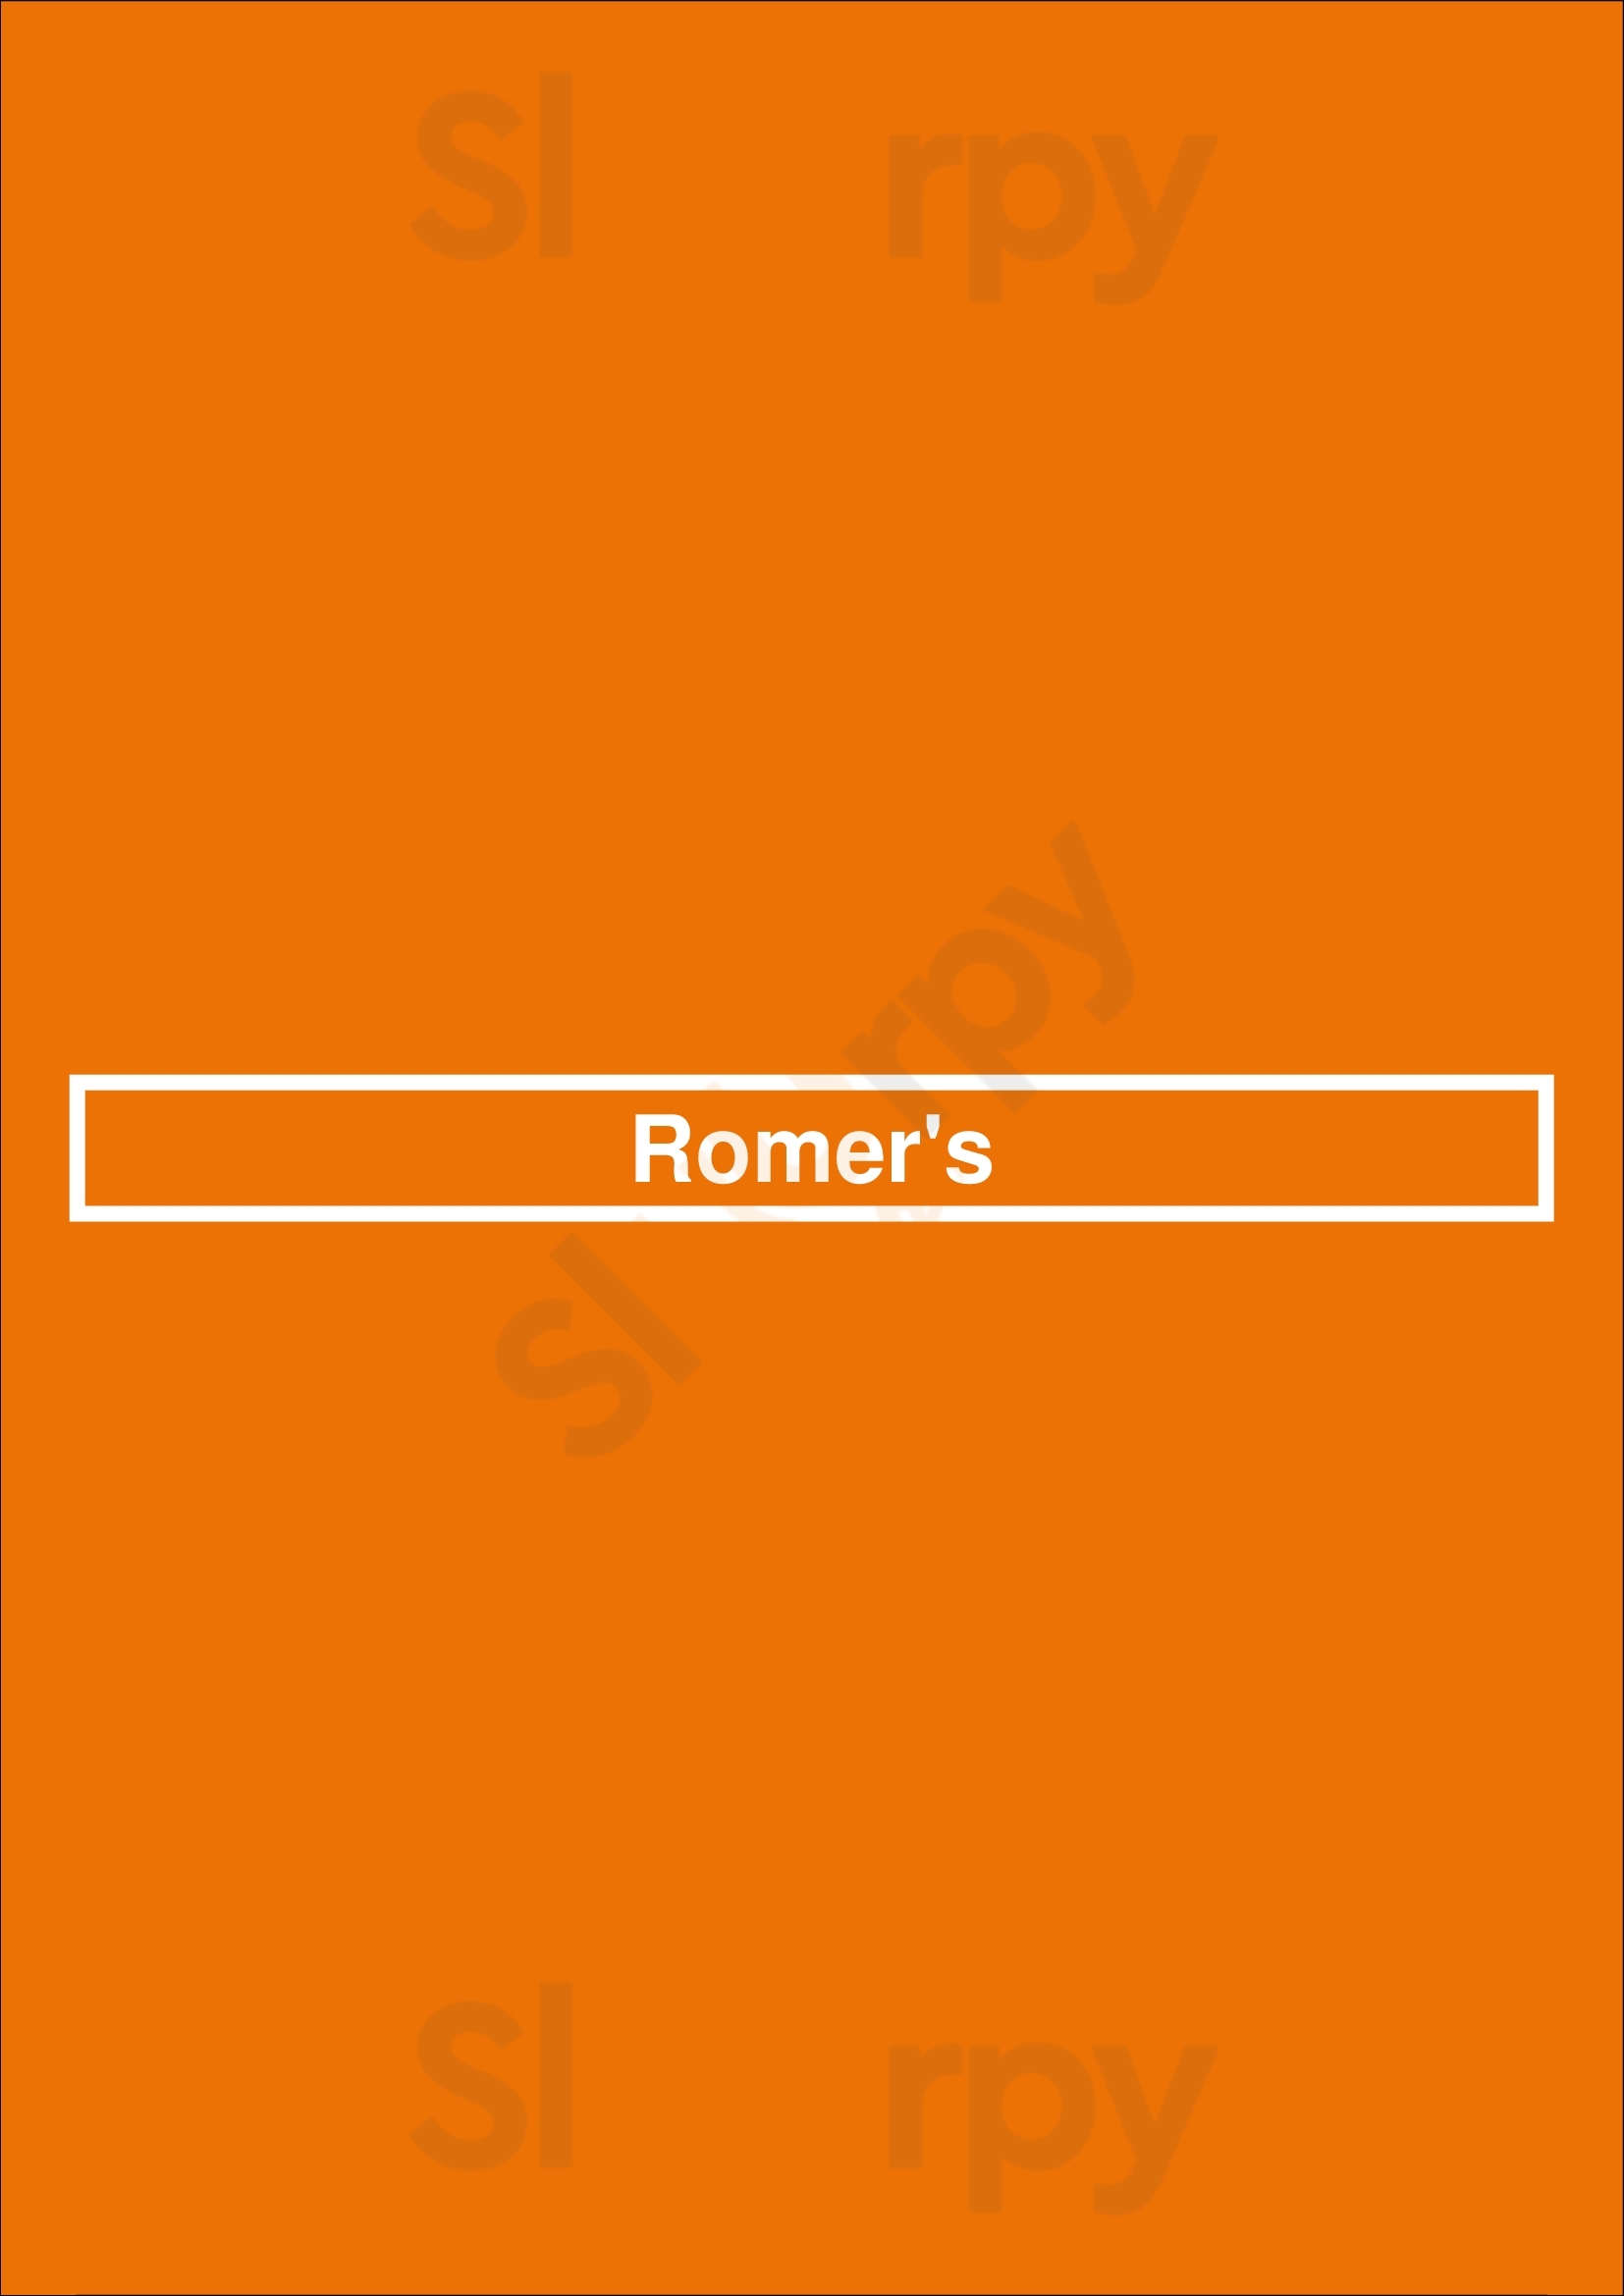 Romer's Vancouver Menu - 1